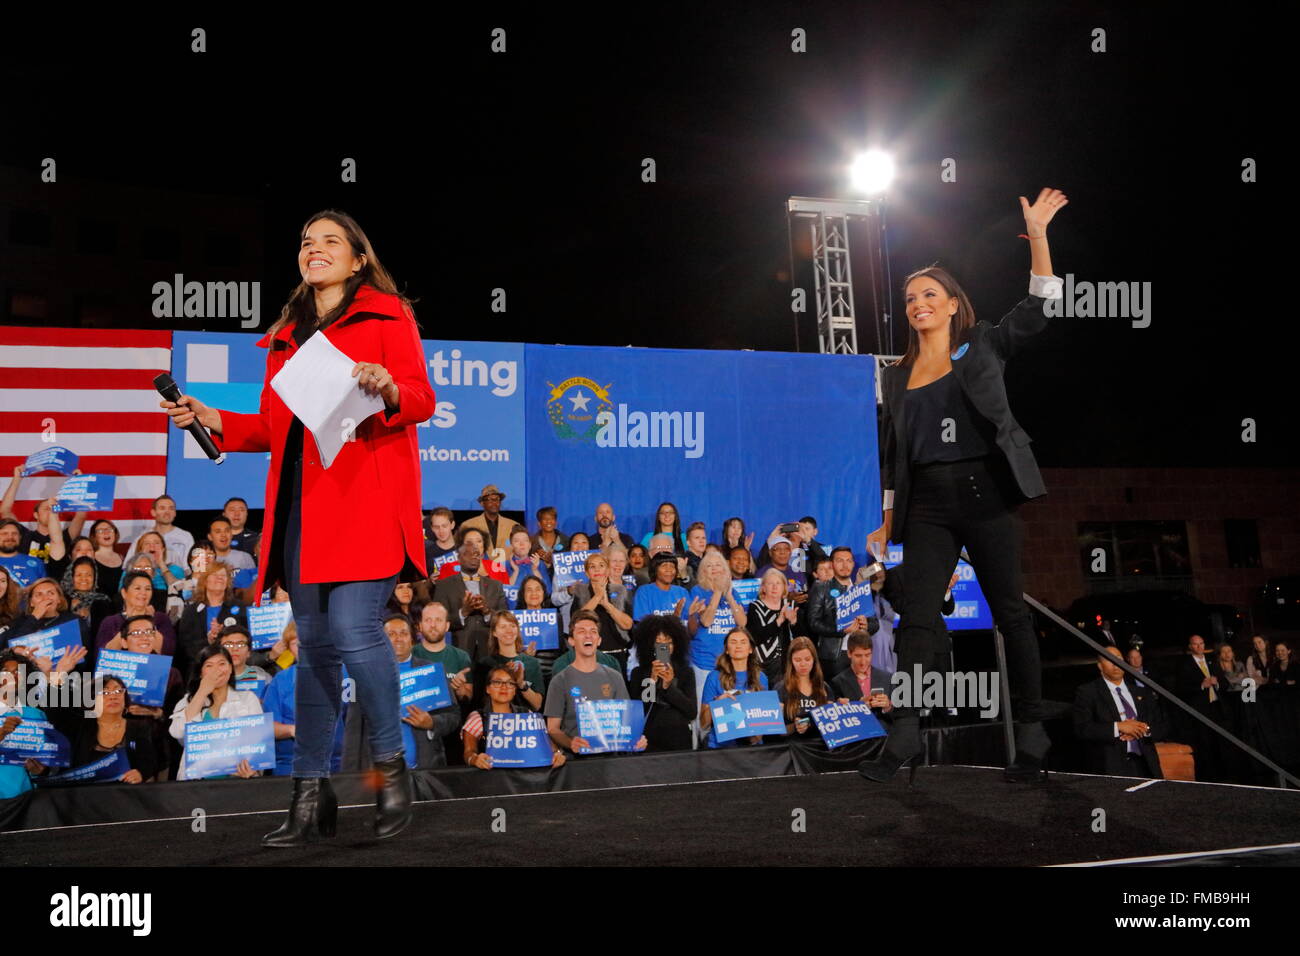 L'attrice Eva Longoria e attrice America Ferrera wave ai partecipanti durante una Hillary Clinton campaign rally presso la contea di Clark governo anfiteatro del centro di Las Vegas, Nevada Foto Stock